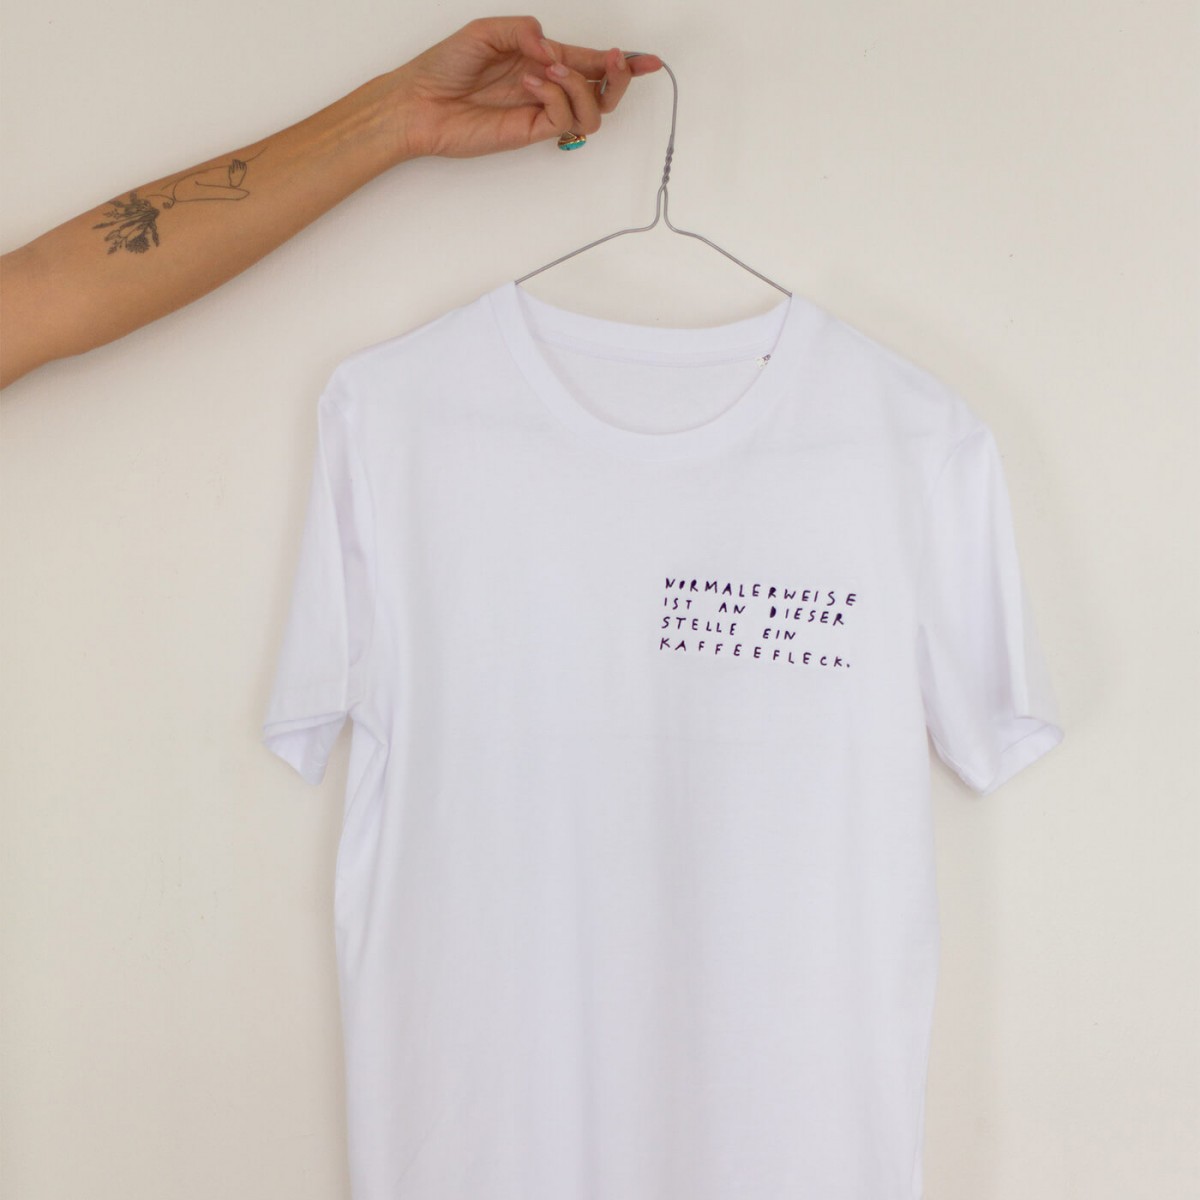 KAFFEEFLECK / WHITE T-Shirt – Kurt und Herbert